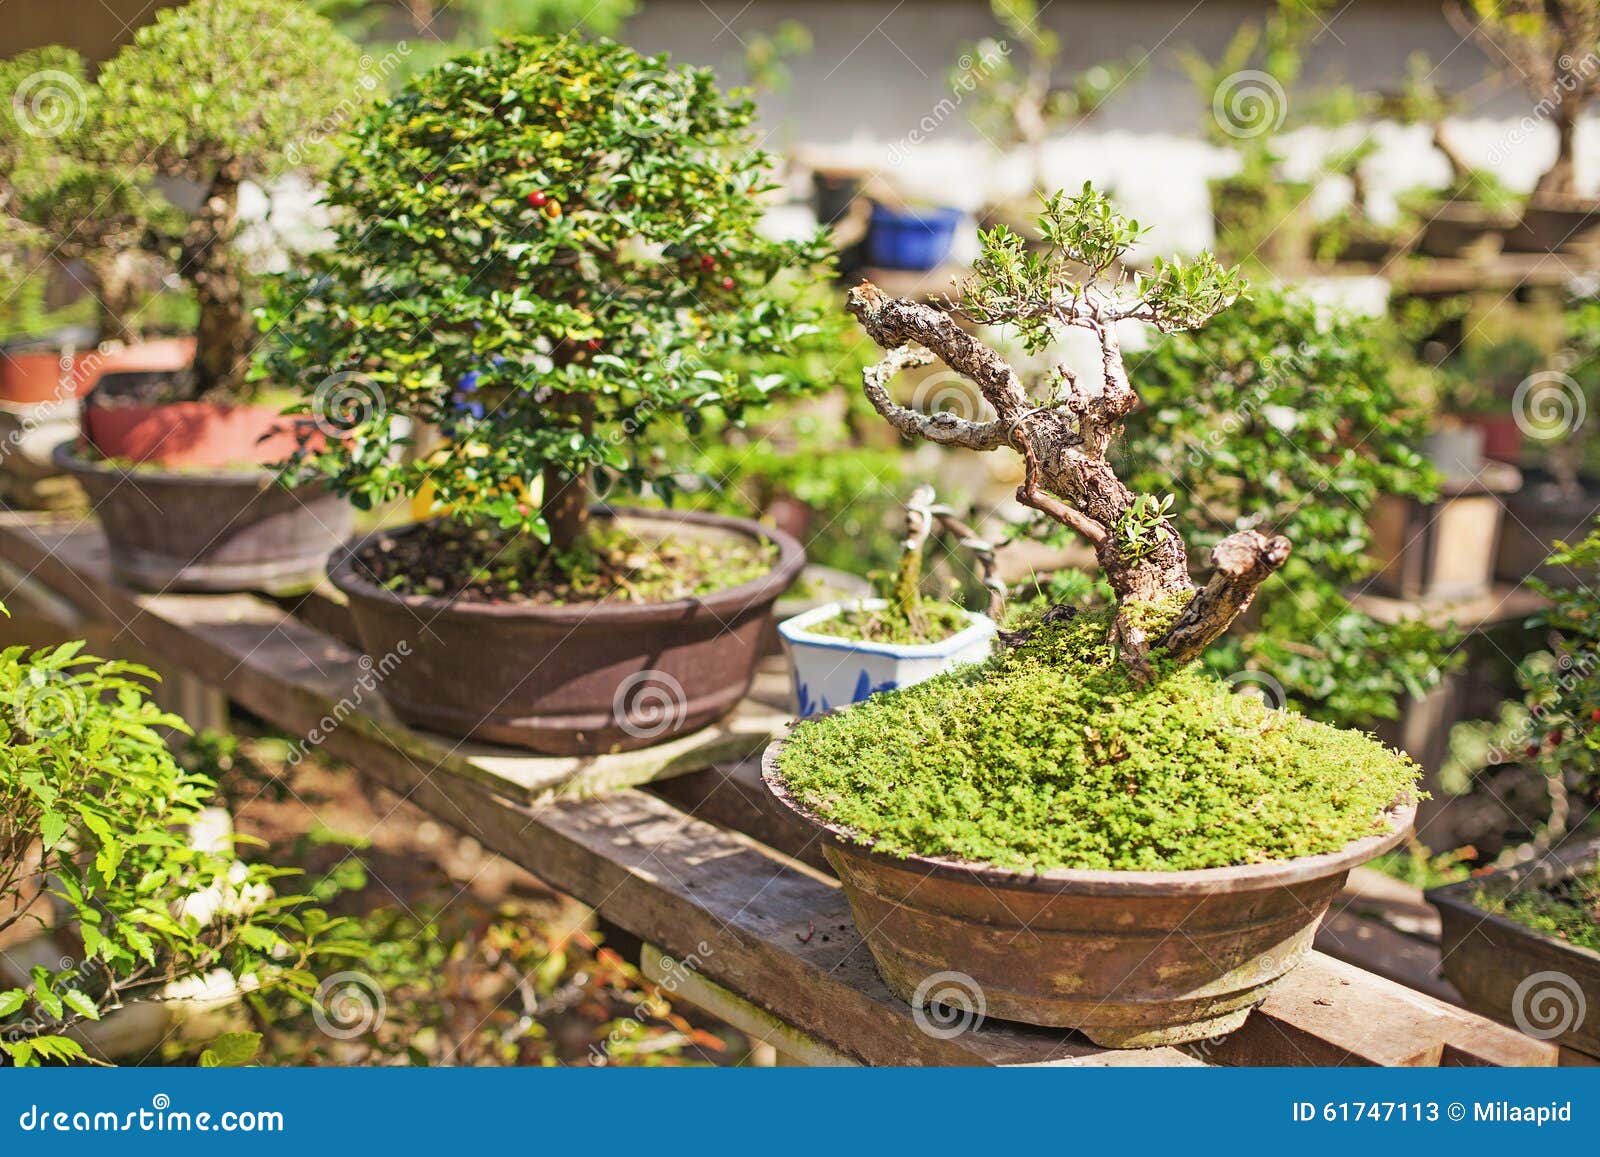 Bonsai Tree Nursery Stock Image Image Of Asian Gardening 61747113